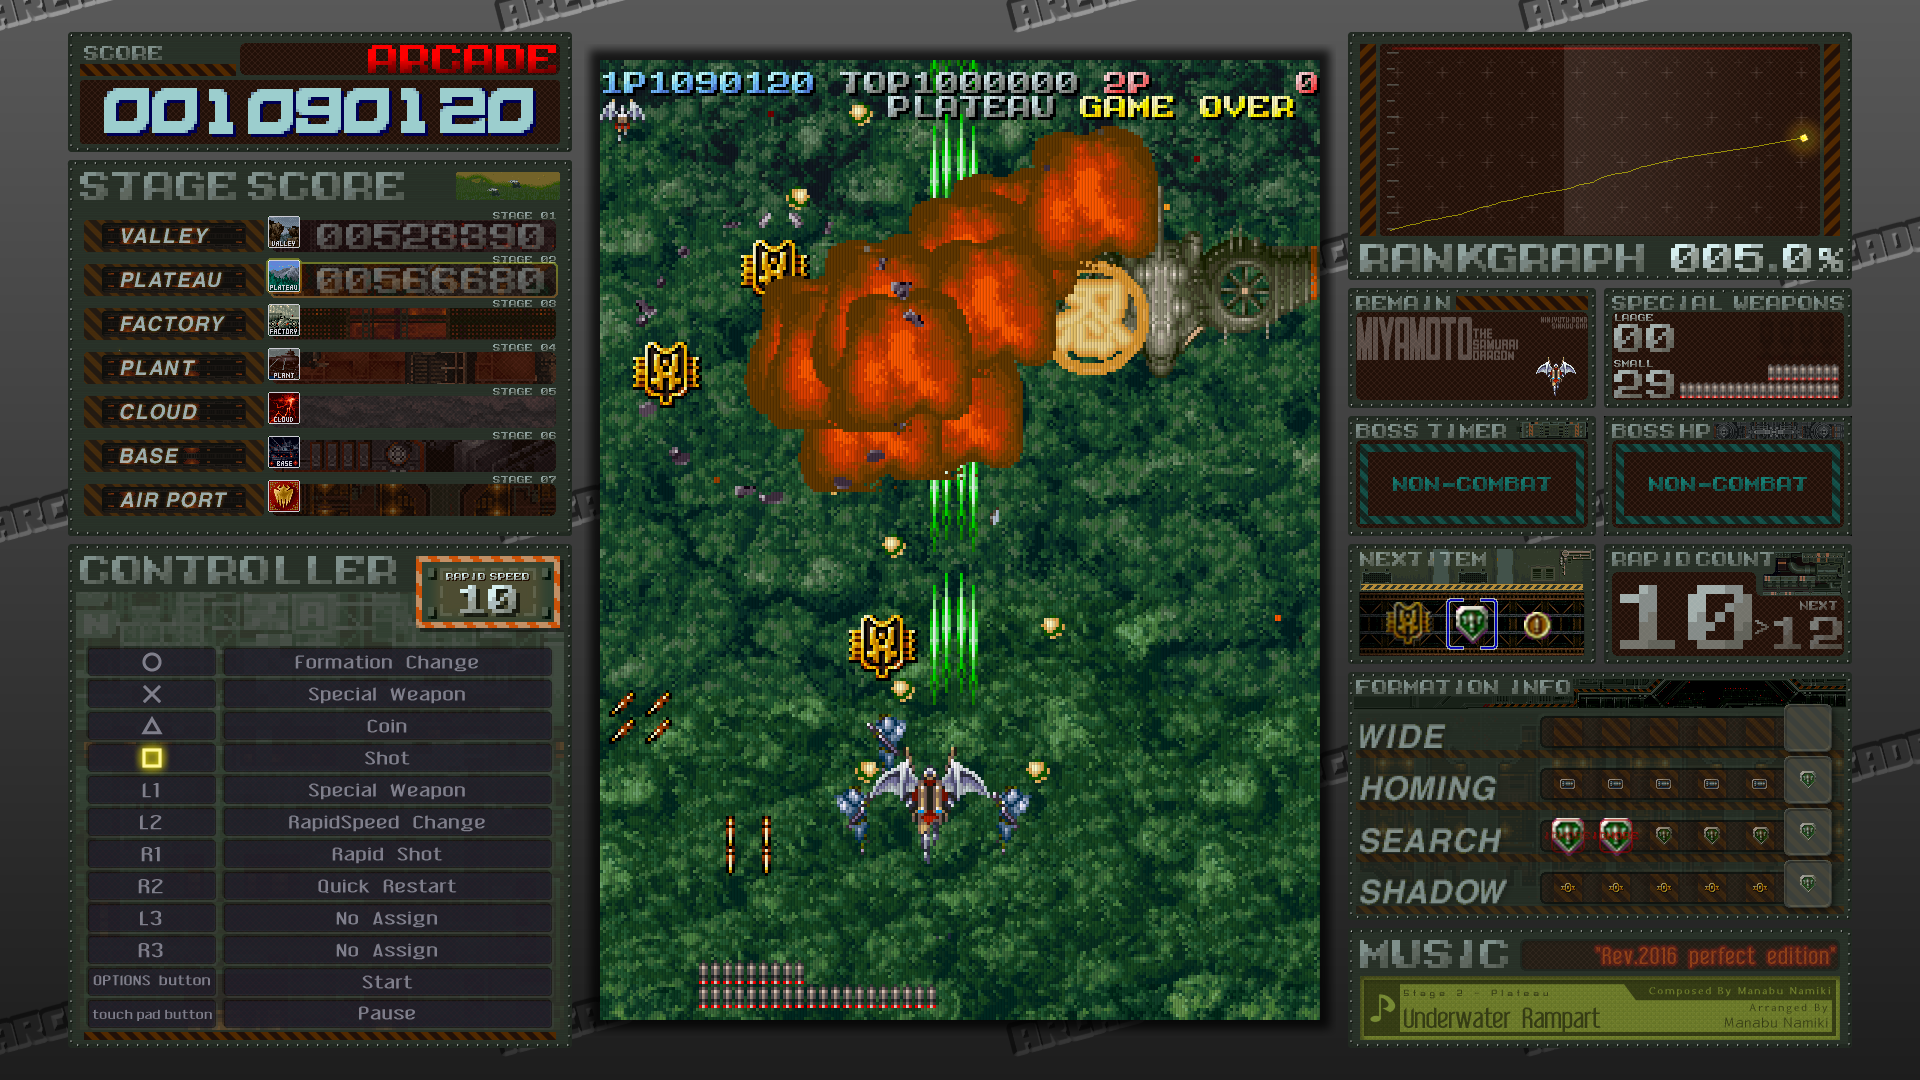 プレイ画面両サイドにデンと構える「M2Gadget」。右上に鎮座するランクグラフの他、攻略上有用な情報が並べられている